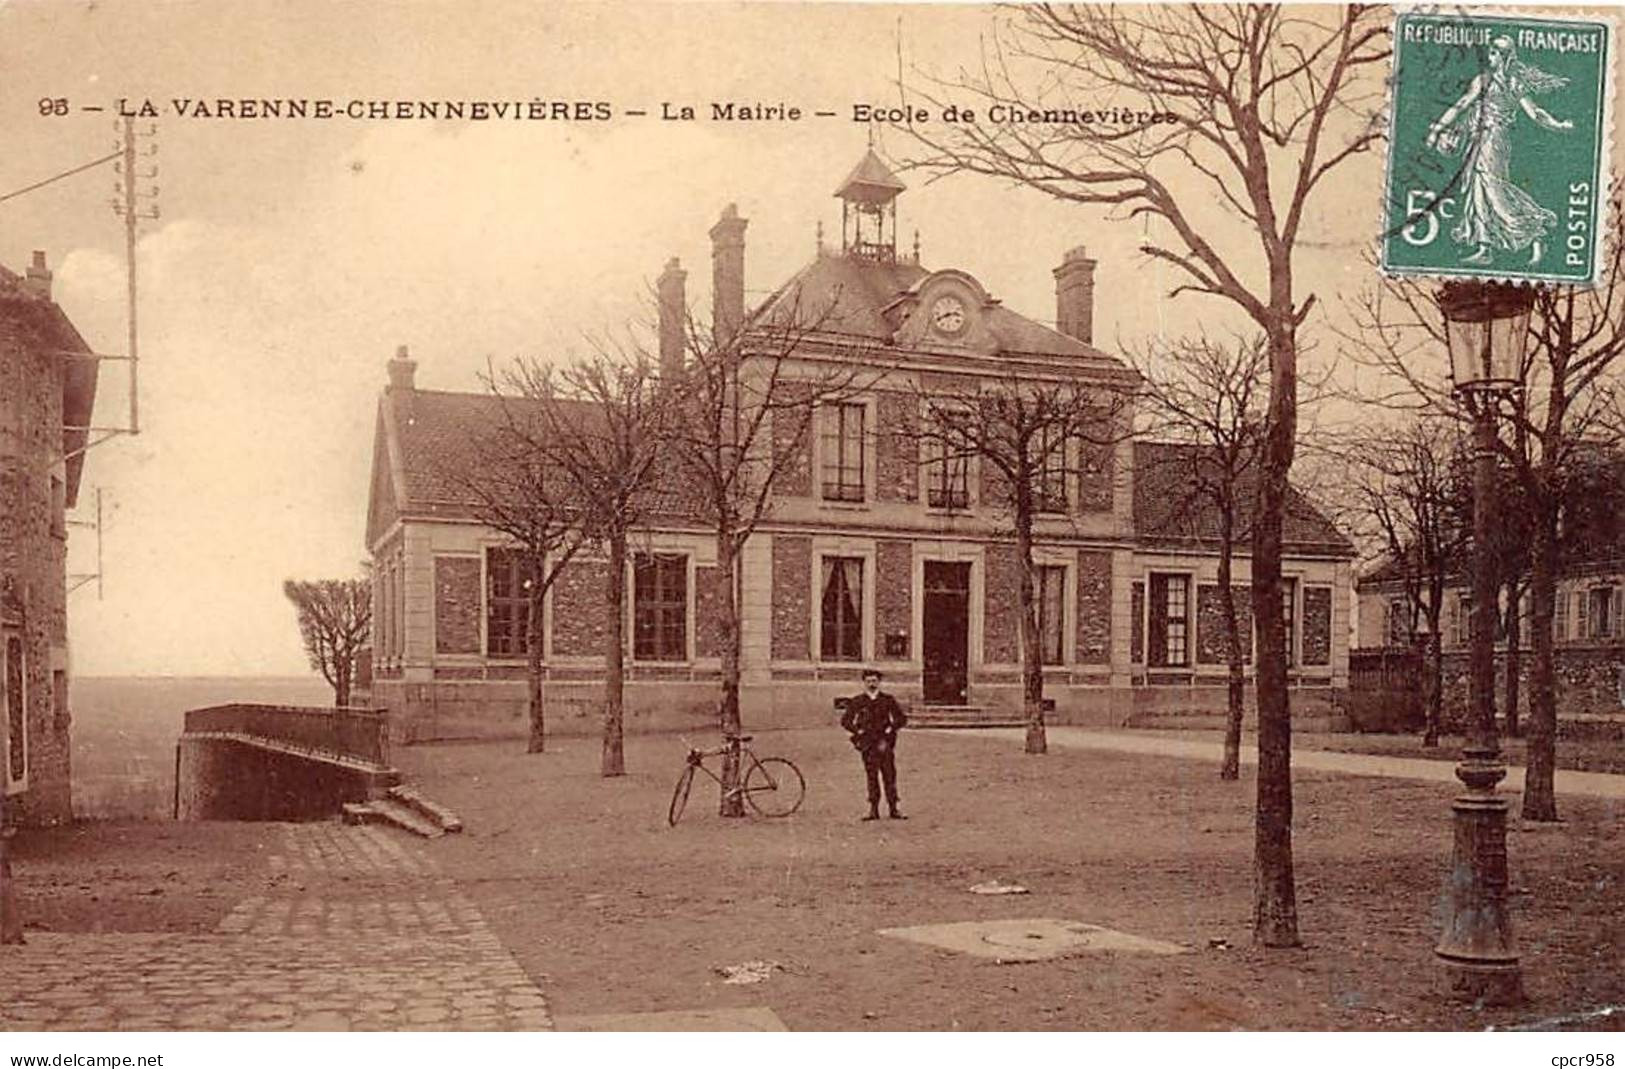 94 - LA VARENNE CHENNEVIERES - SAN53537 - La Mairie - Ecole De Chennevière - Chennevieres Sur Marne